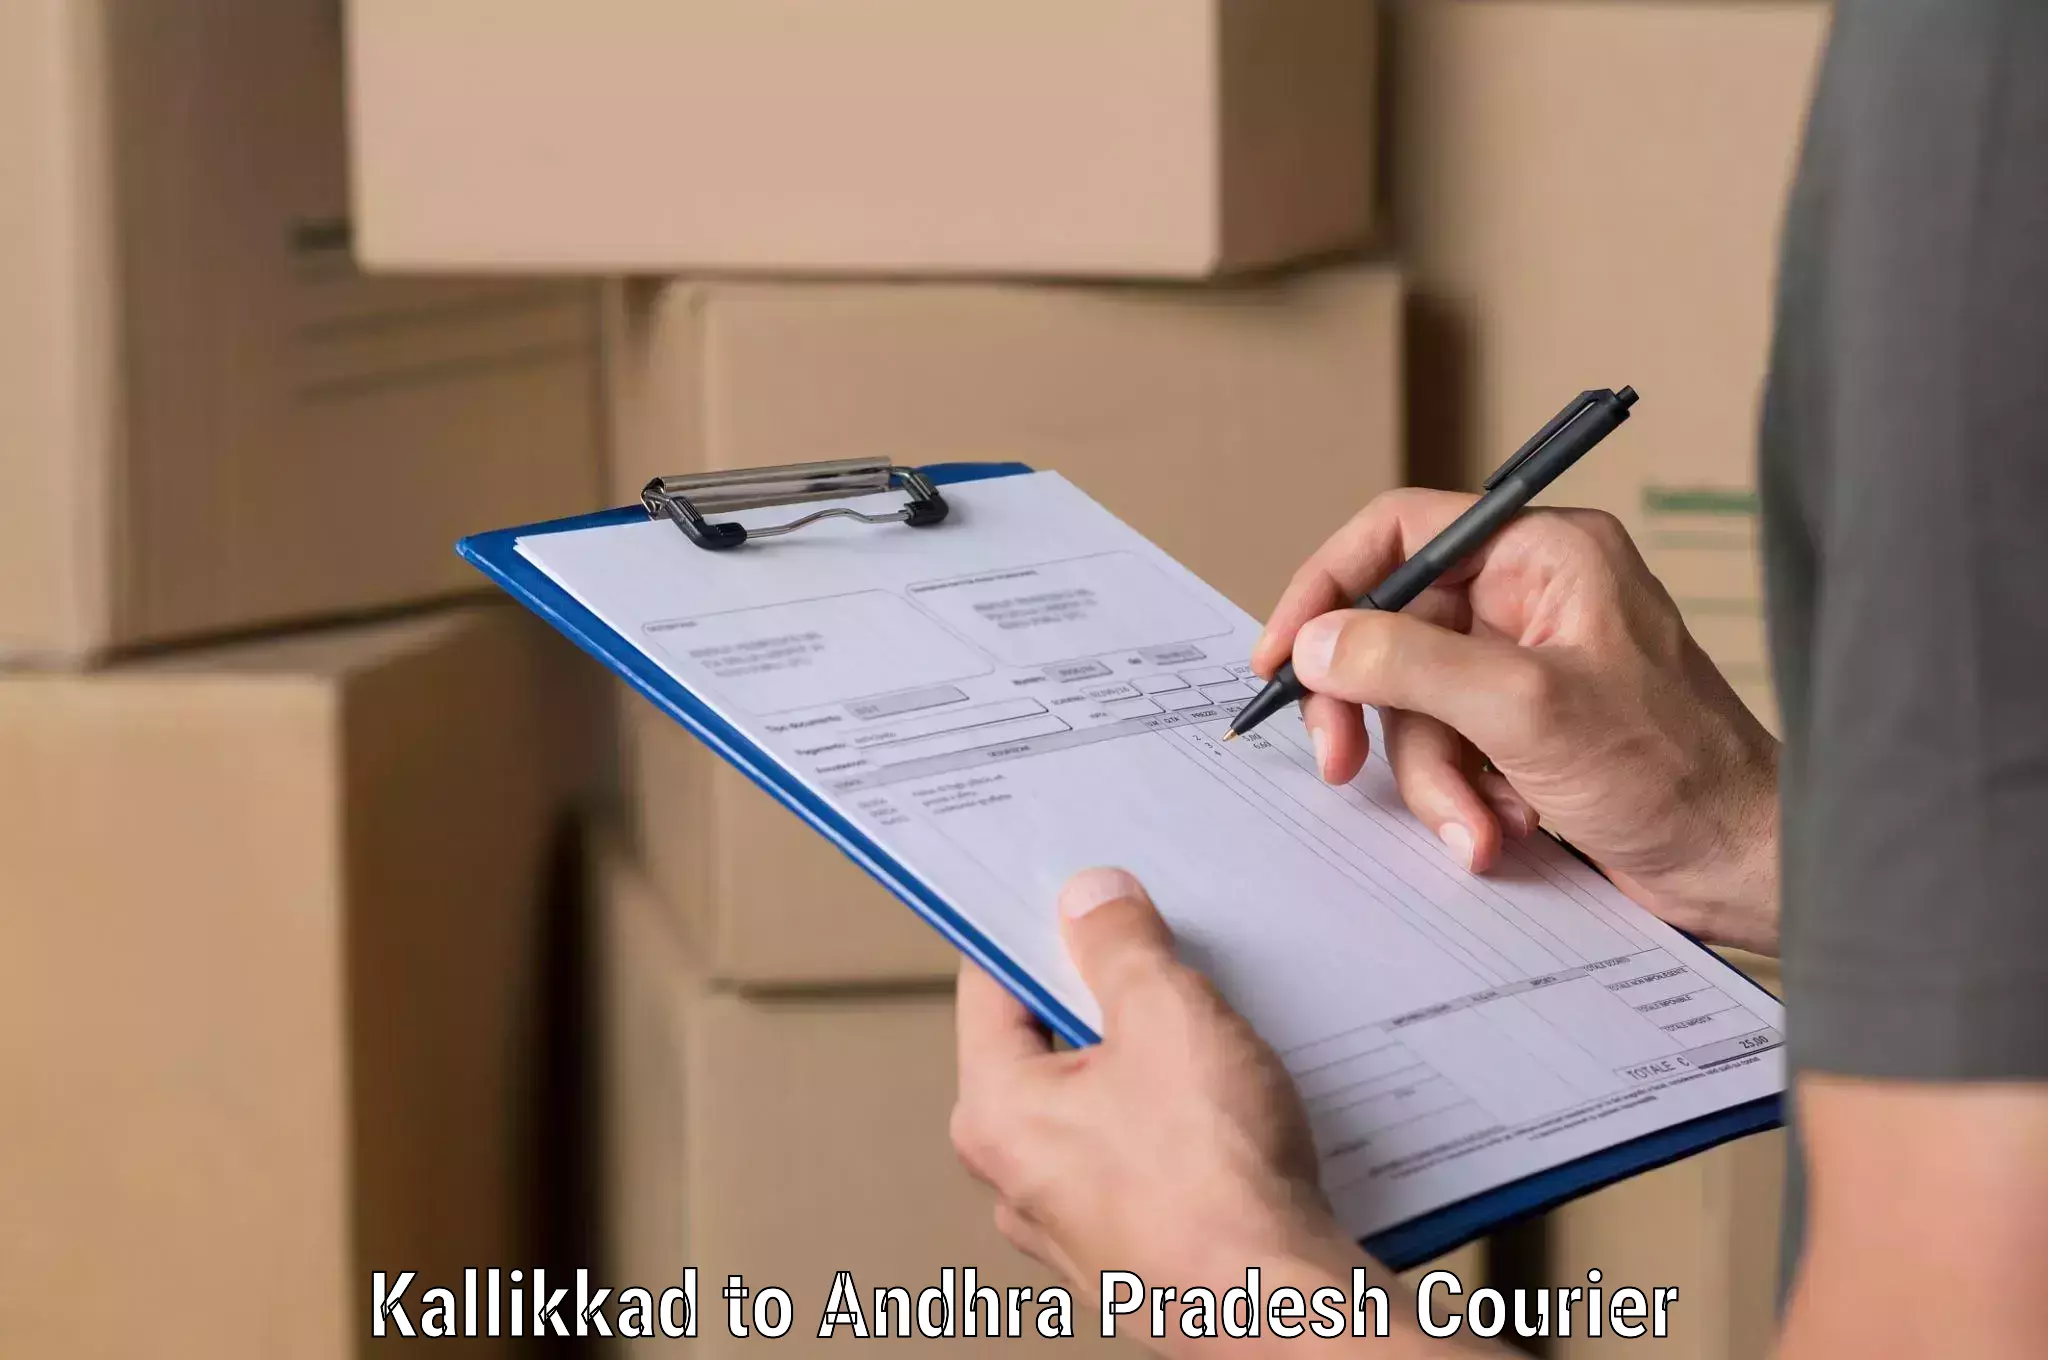 Full-service courier options Kallikkad to Atchempet